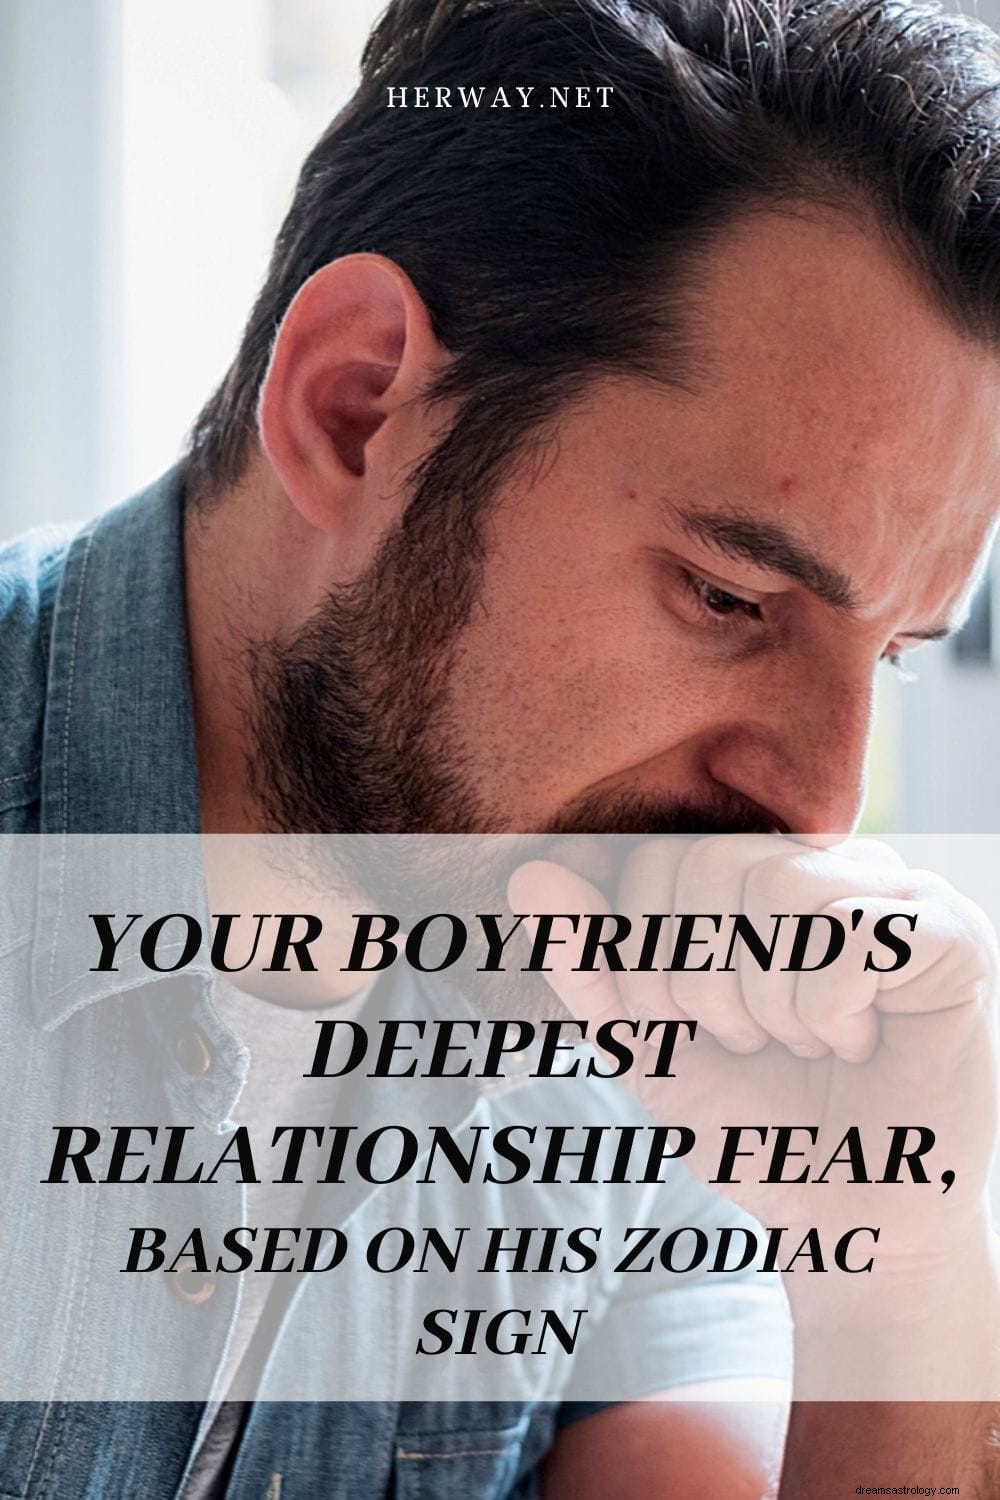 La peur relationnelle la plus profonde de votre petit ami, basée sur son signe du zodiaque